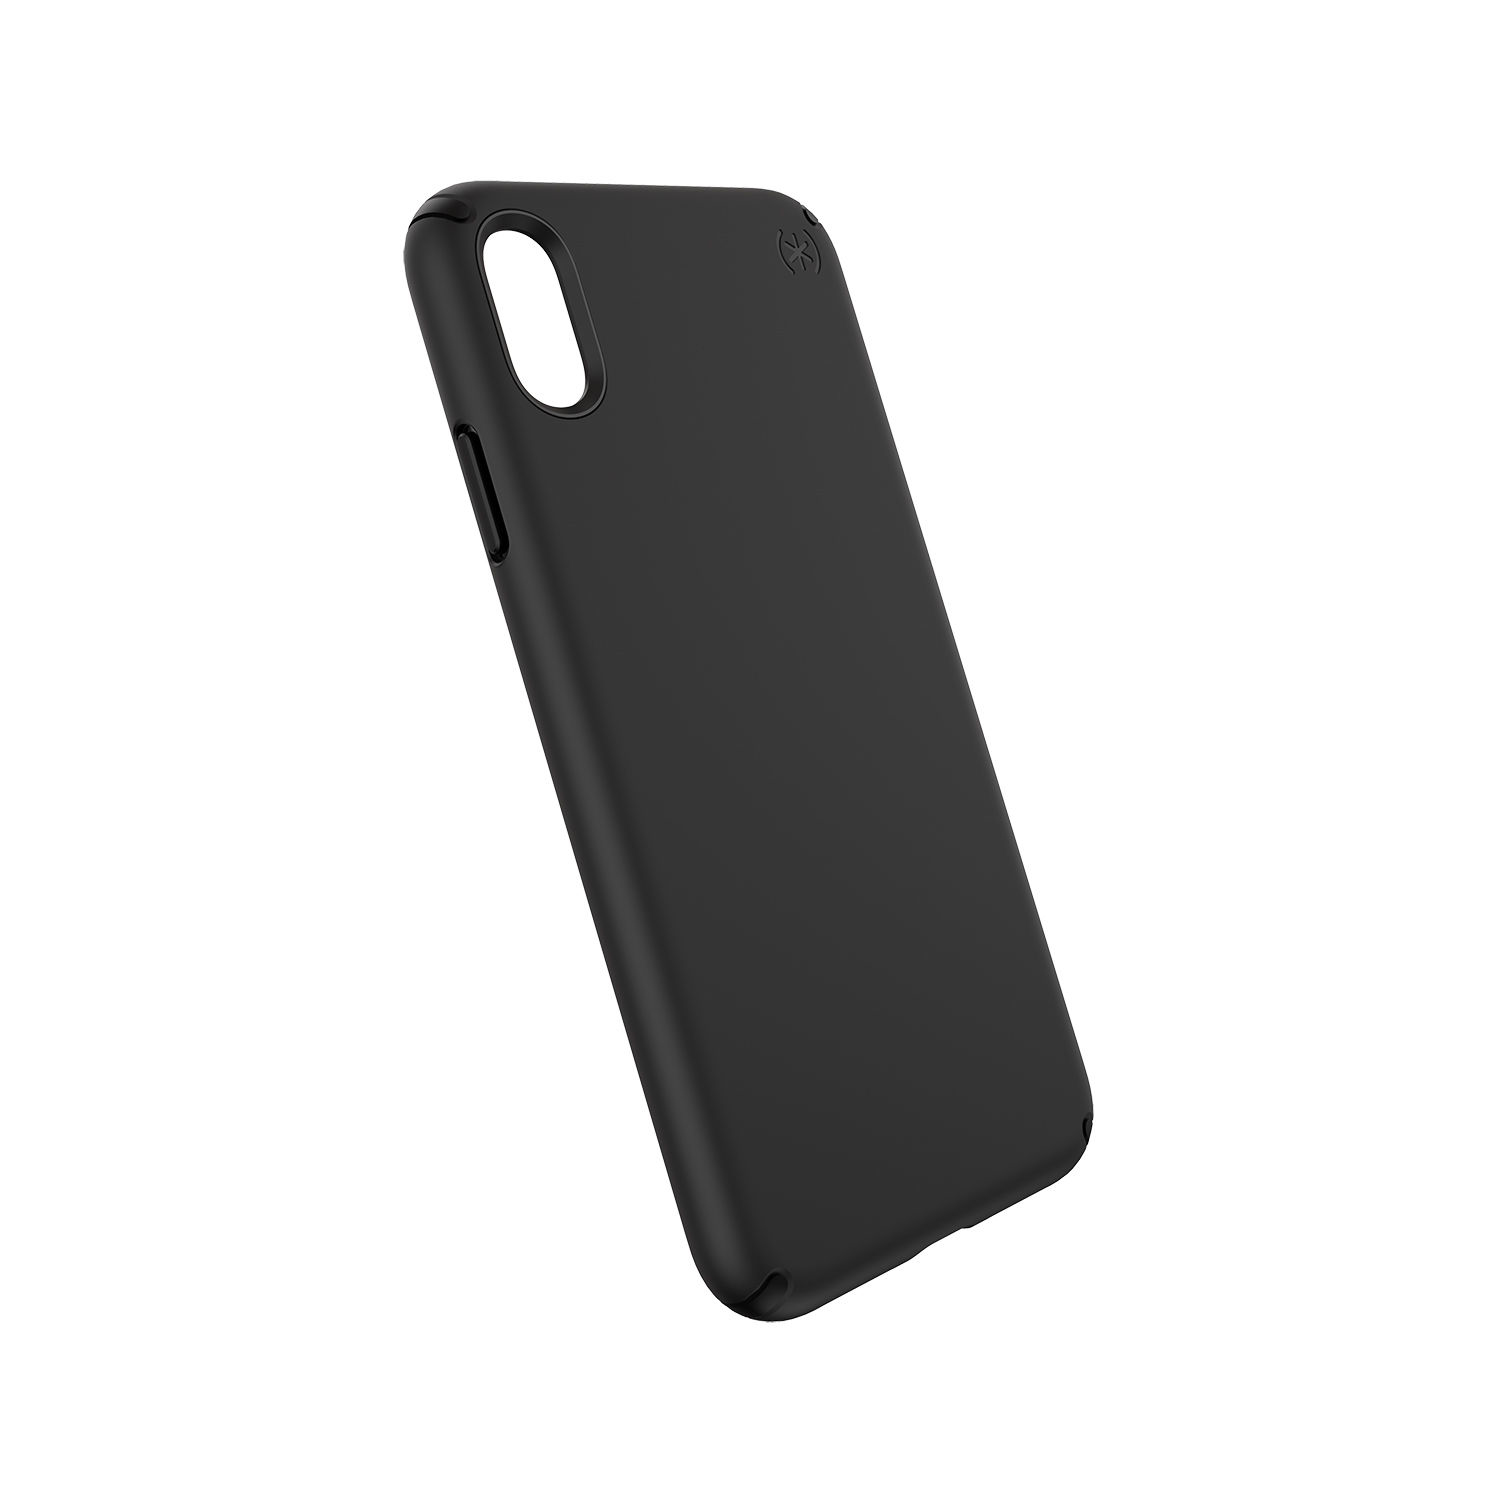 Speck Presidio Pro Case Black/Black for iPhone XS Max